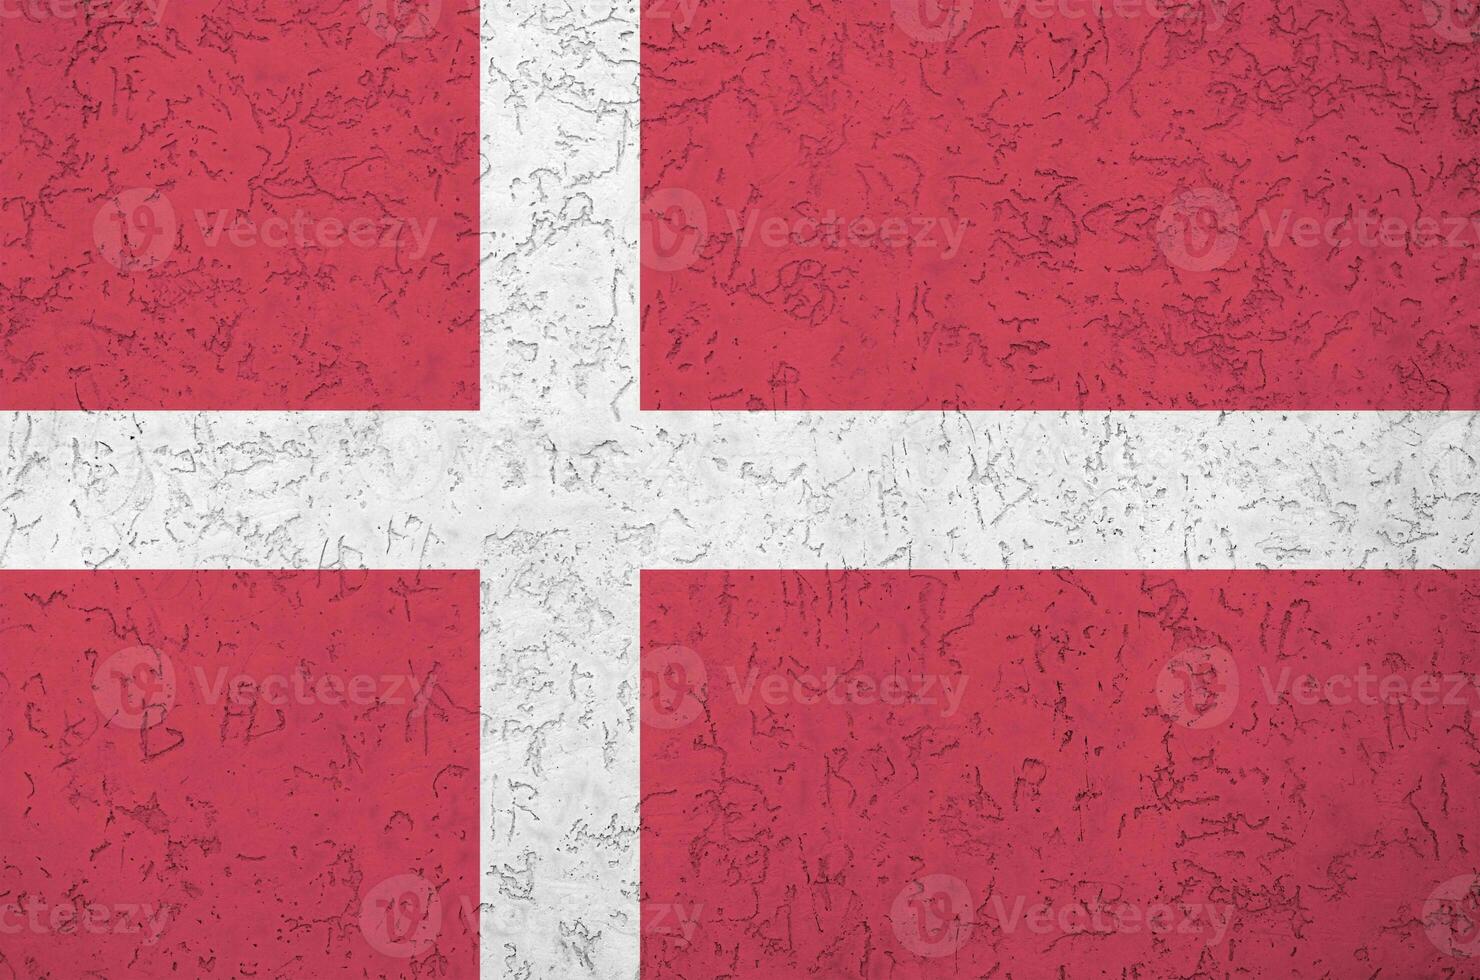 Danmark flagga avbildad i ljus måla färger på gammal lättnad putsning vägg. texturerad baner på grov bakgrund foto